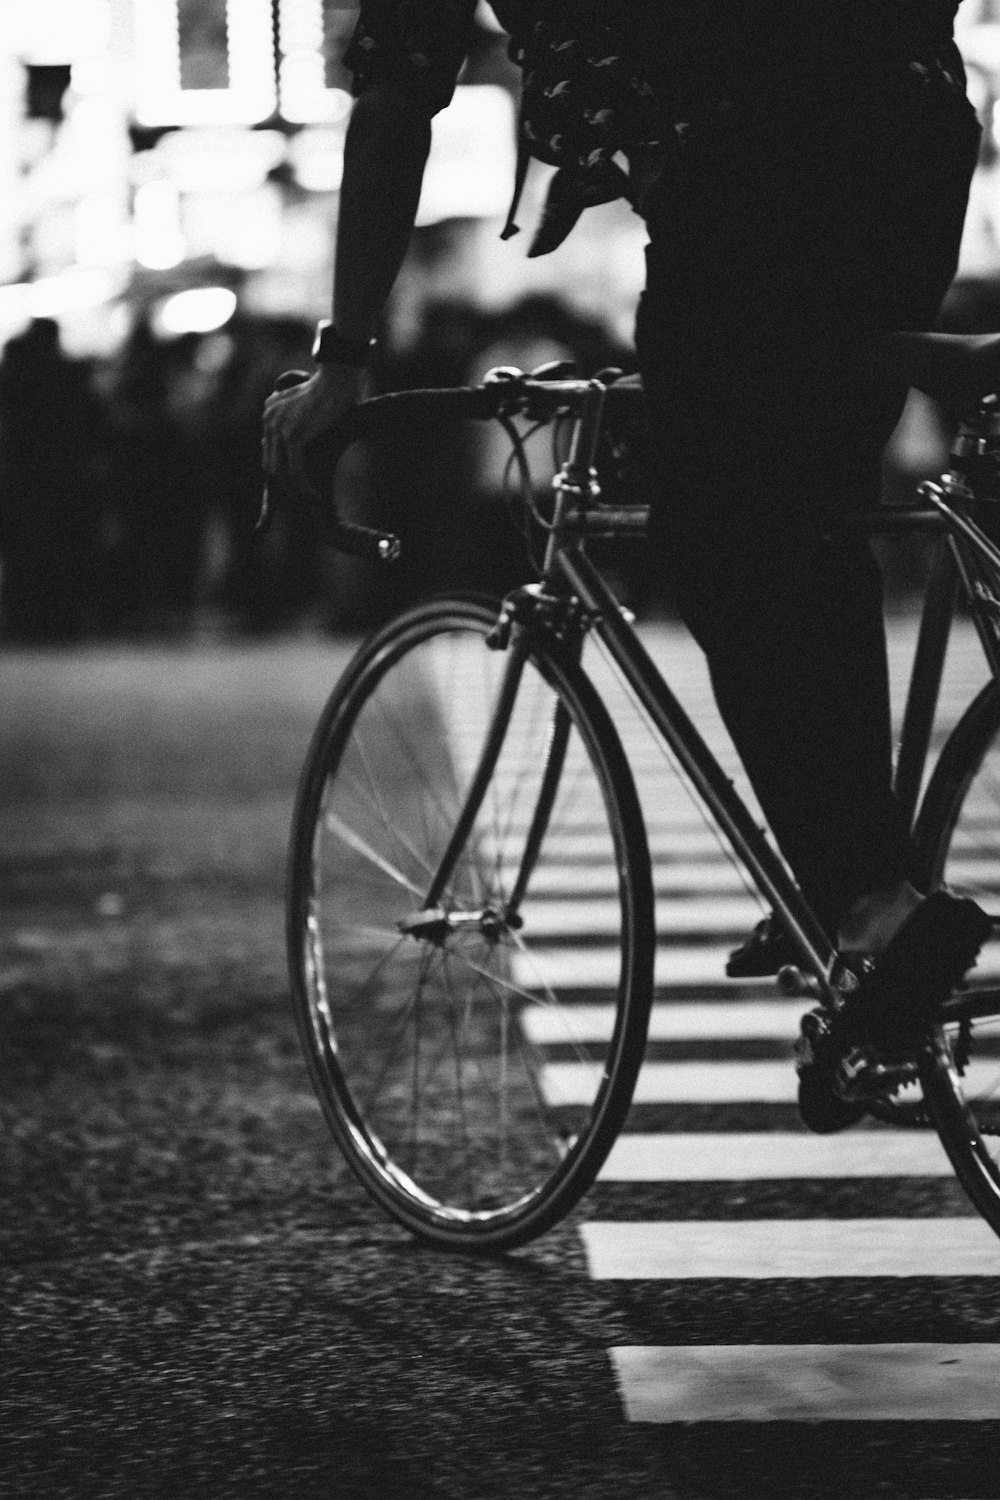 Fotografía en escala de grises de una persona montando en bicicleta